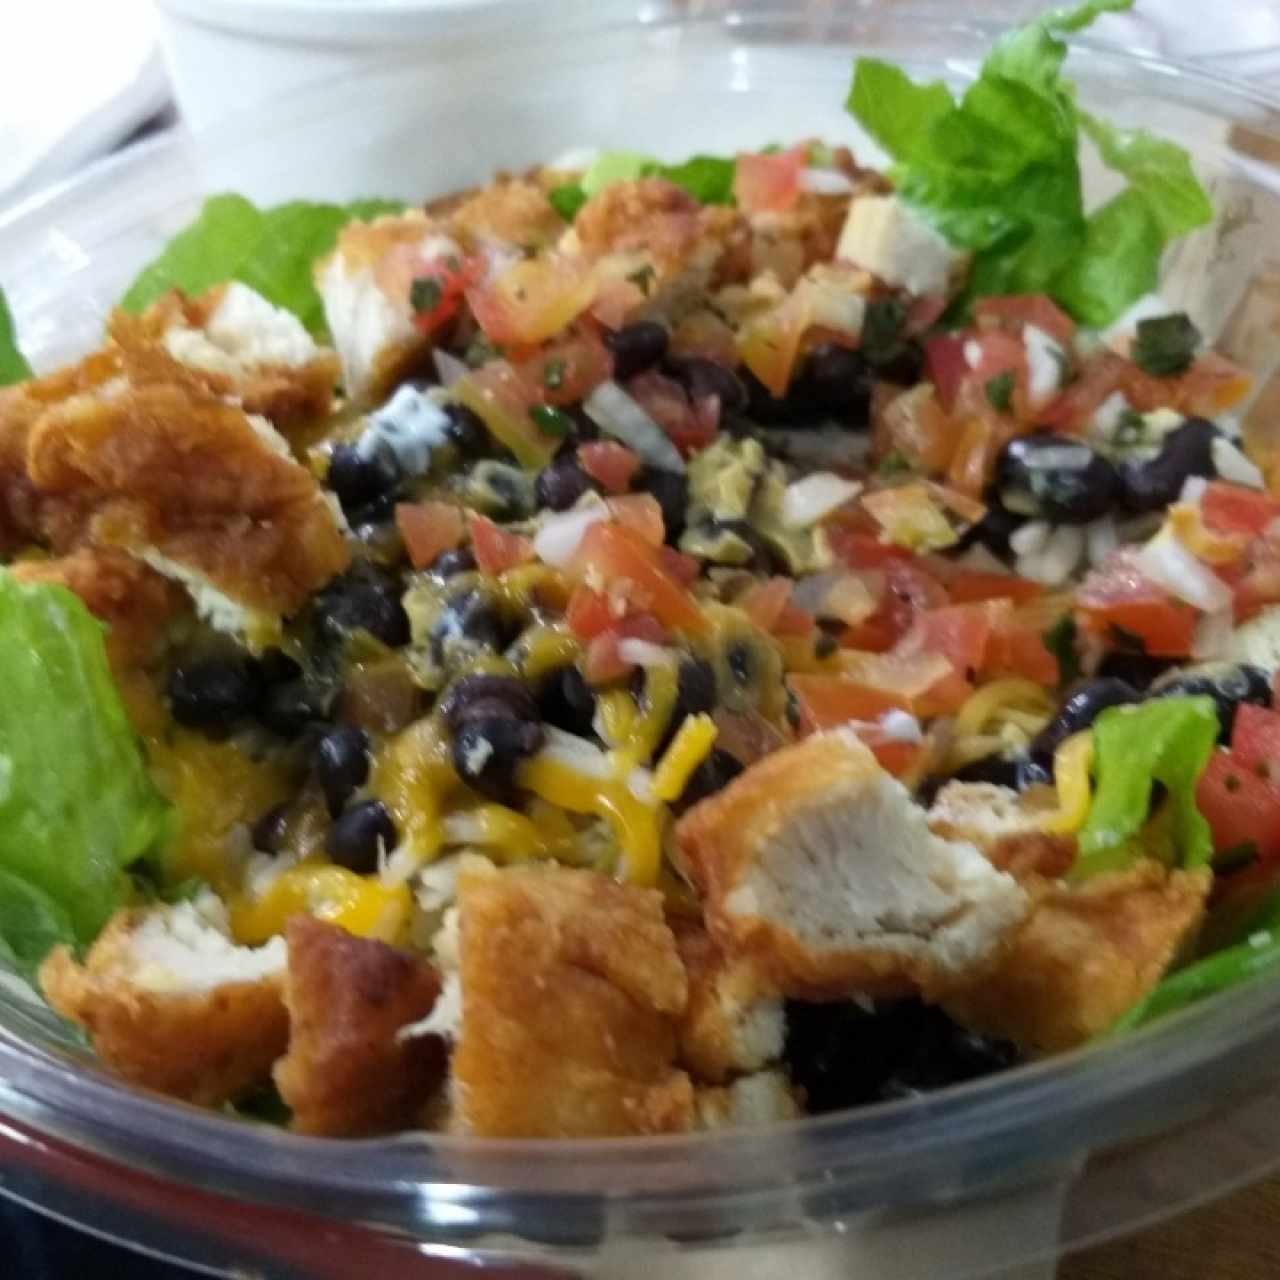 Chicken burrito salad